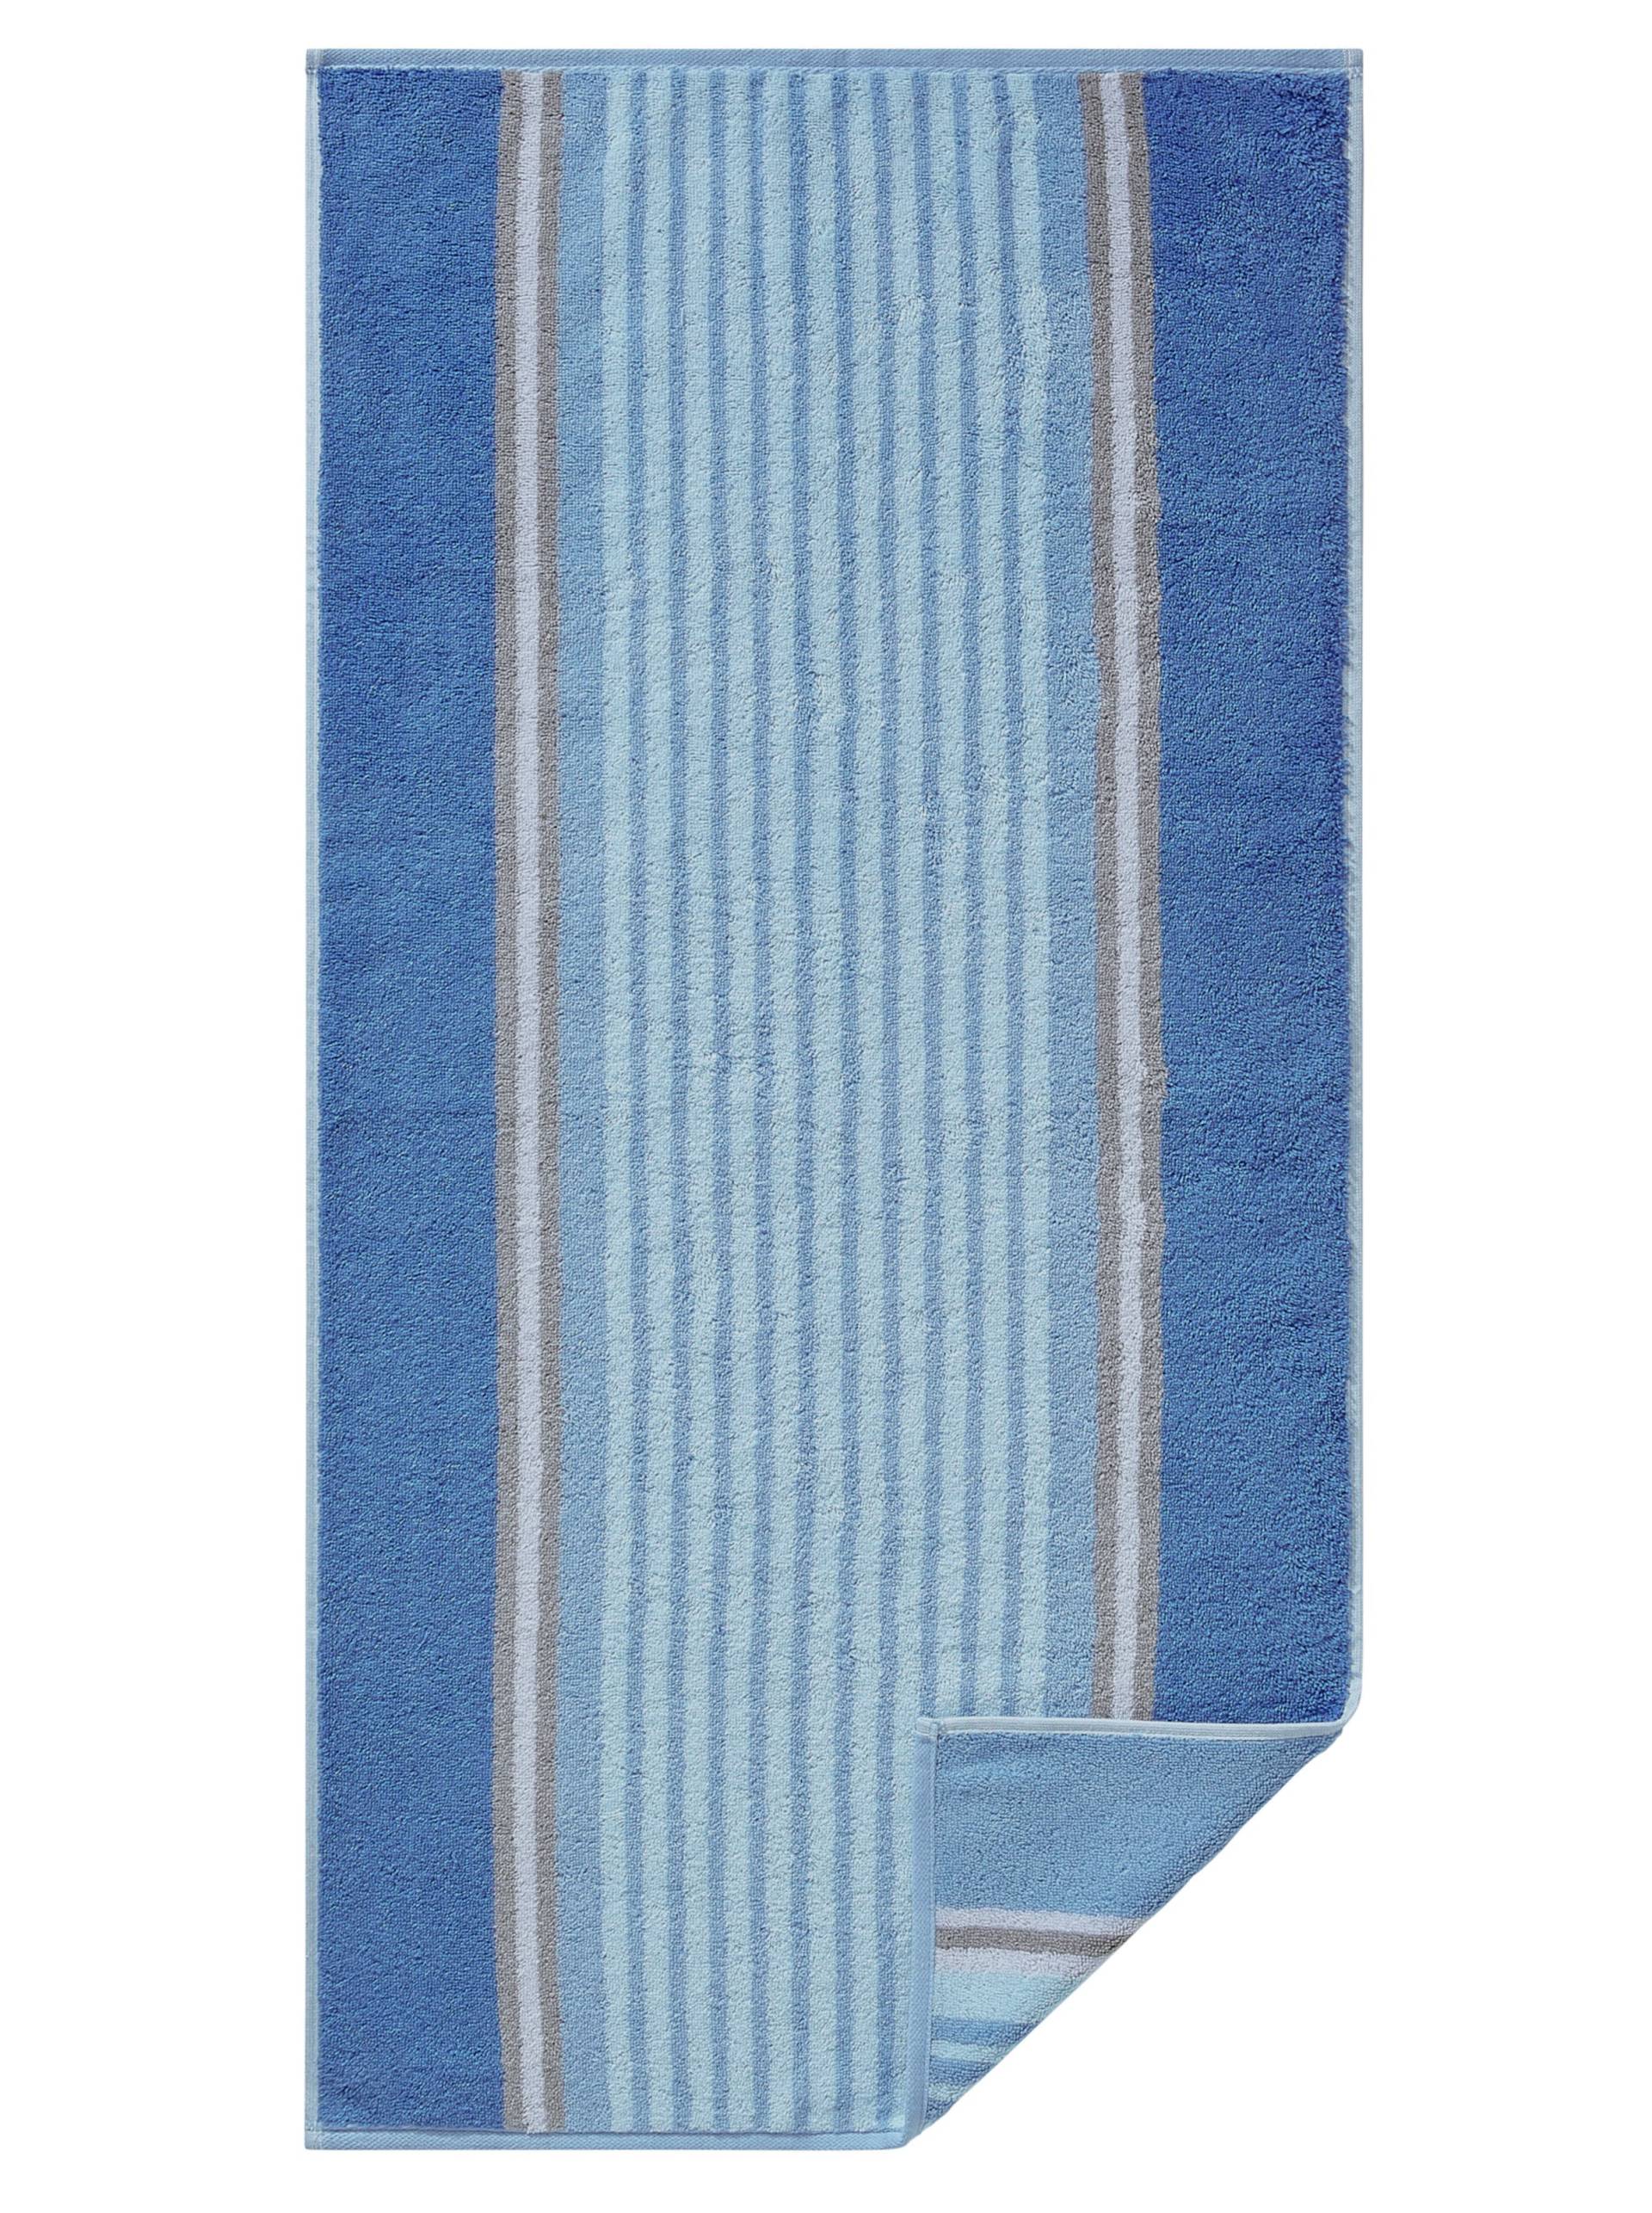 Handtuch in bleu-gestreift von Cawö von Cawö